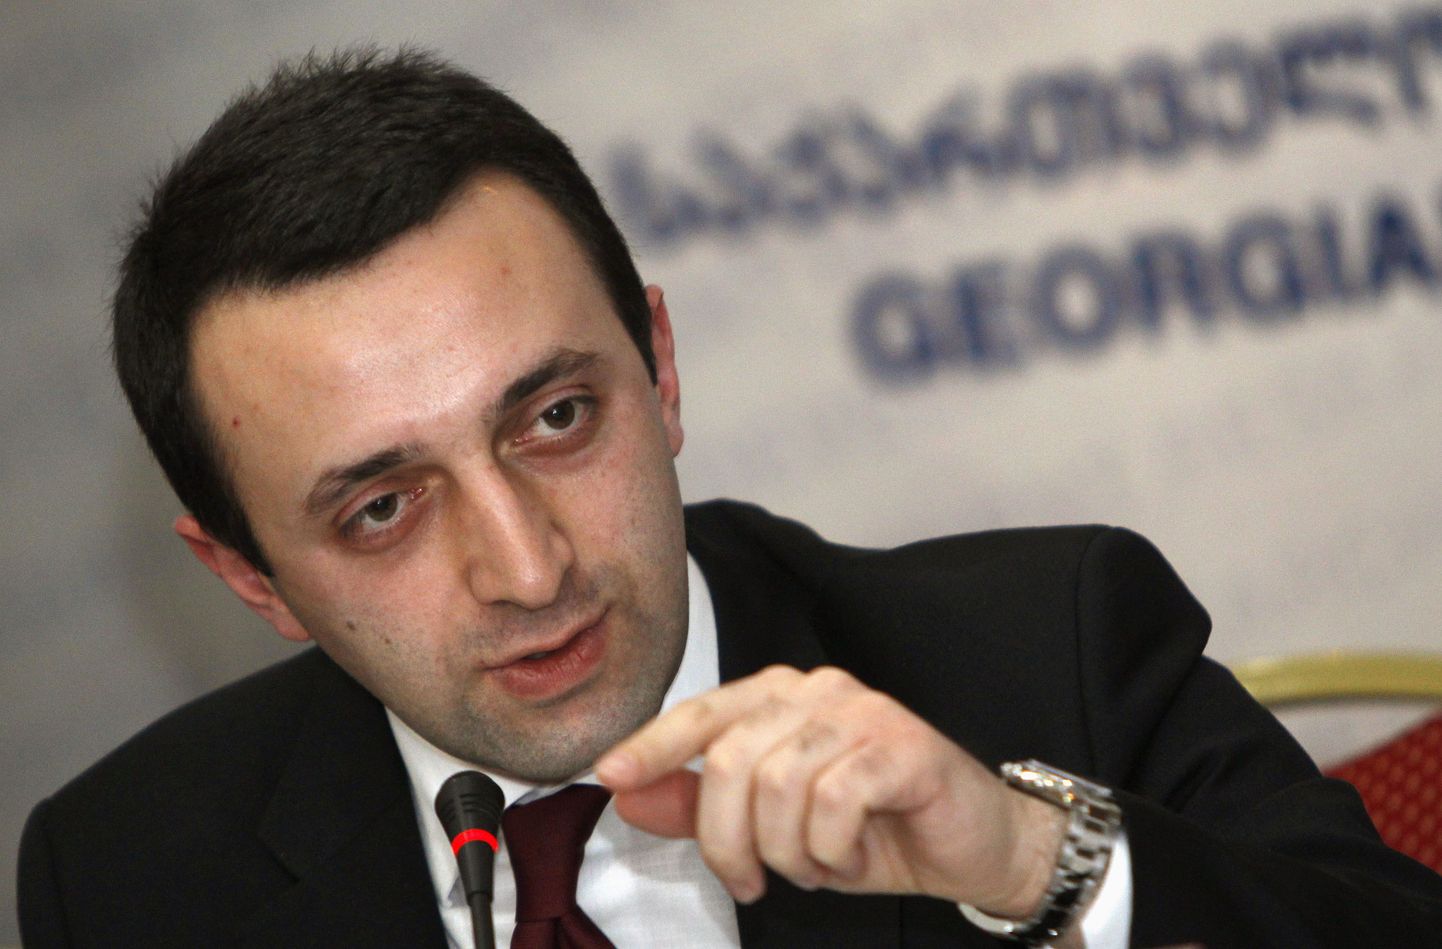 Gruusia siseminister Irakli Garibašvili muutis narkotesti kohustuslikuks igale politseinikule.